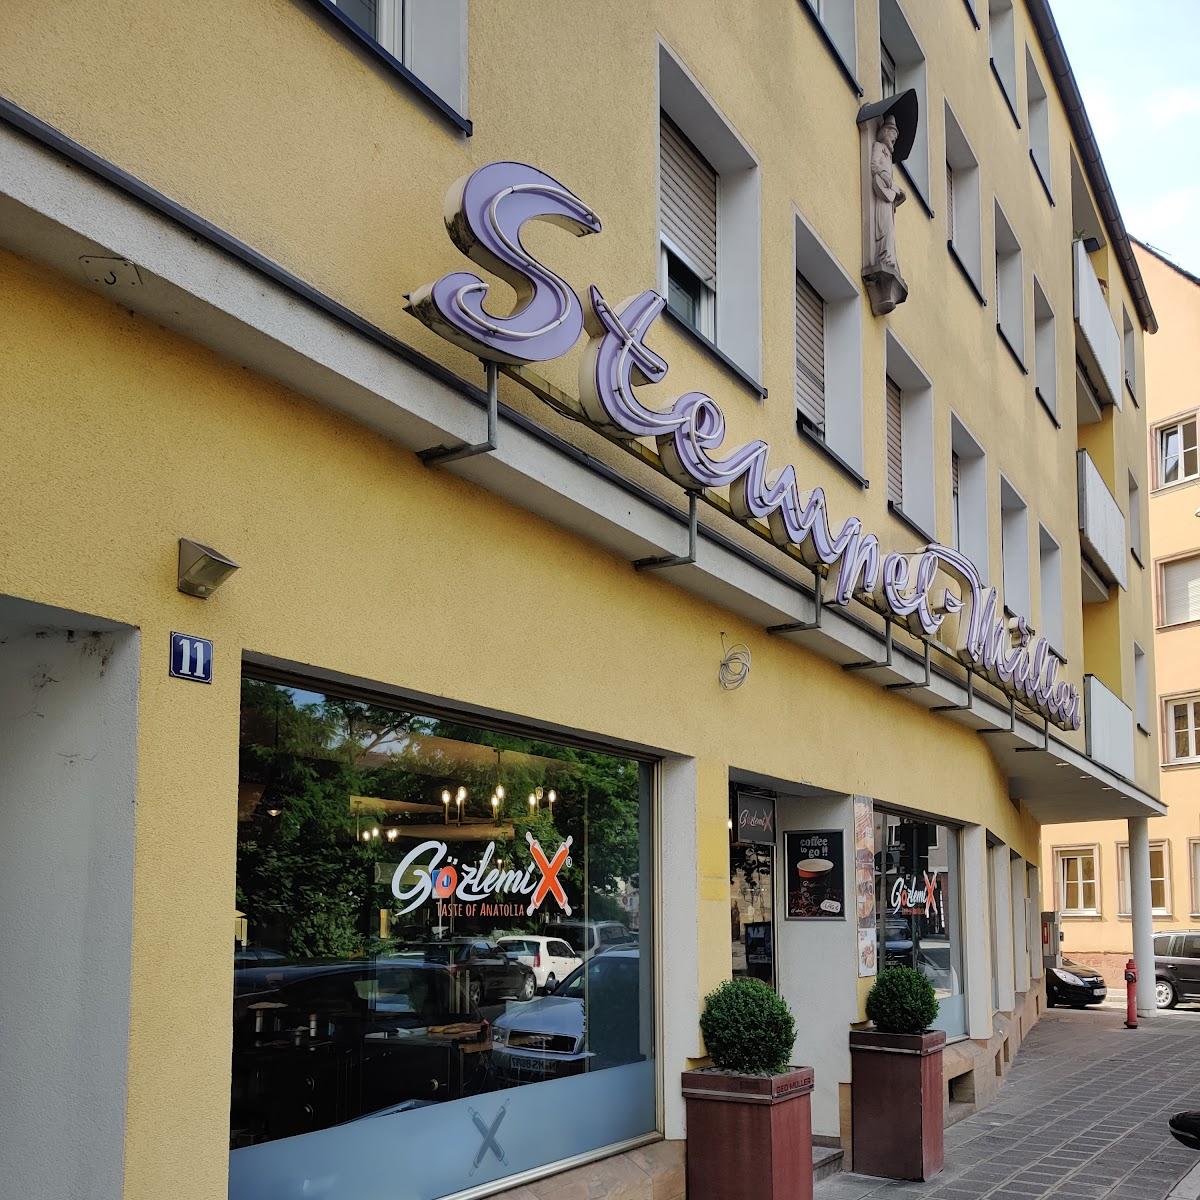 Restaurant "Gözlemix  Zentrum" in Nürnberg